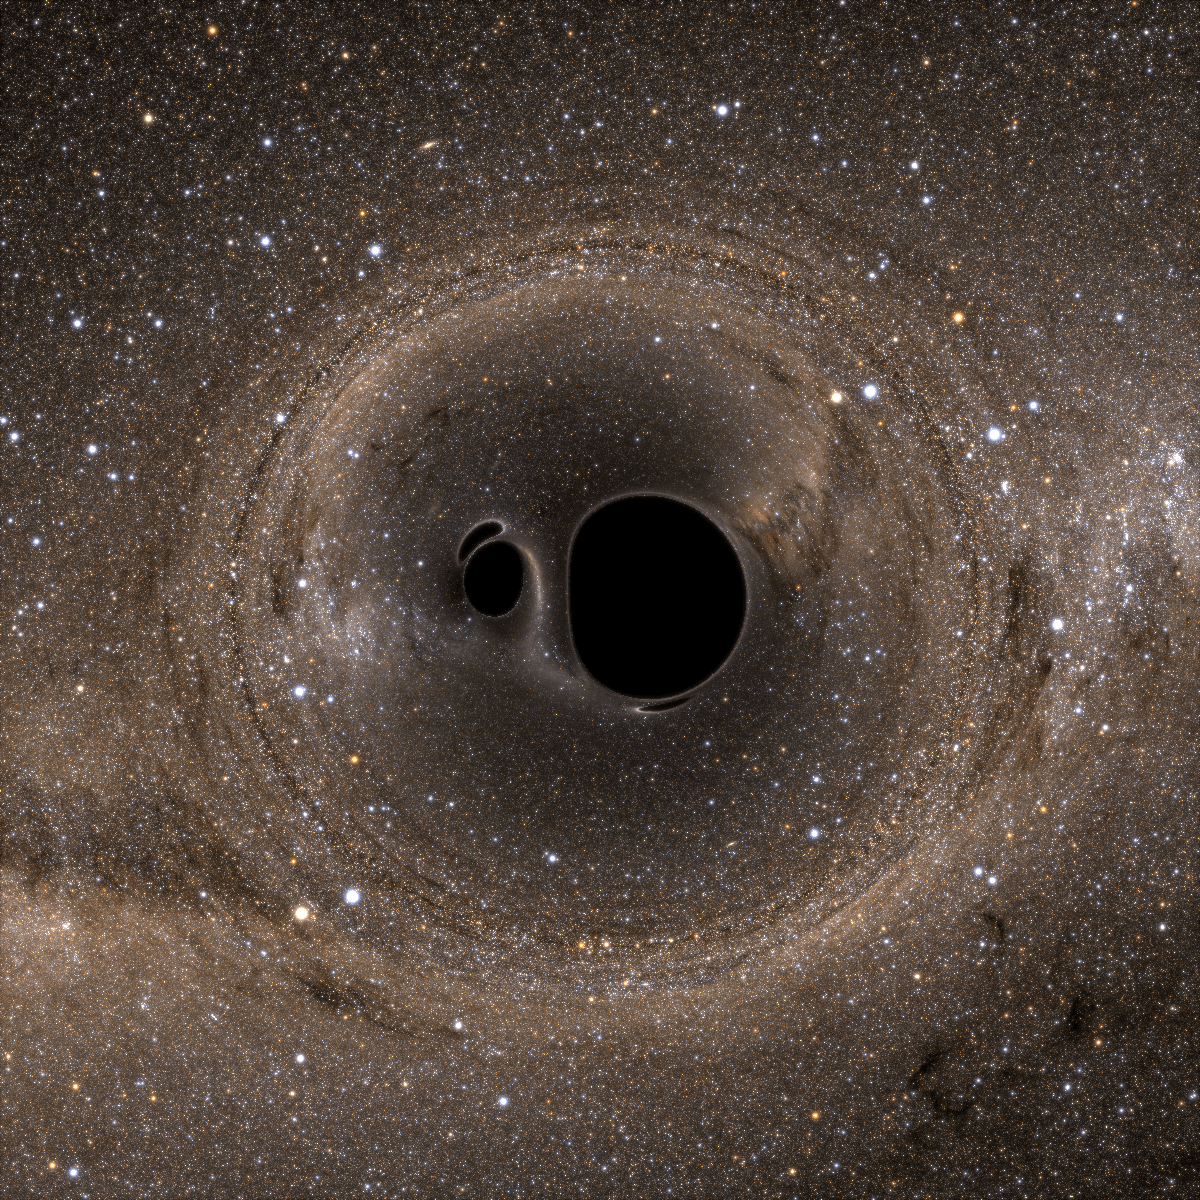 nasa black hole merger simulation